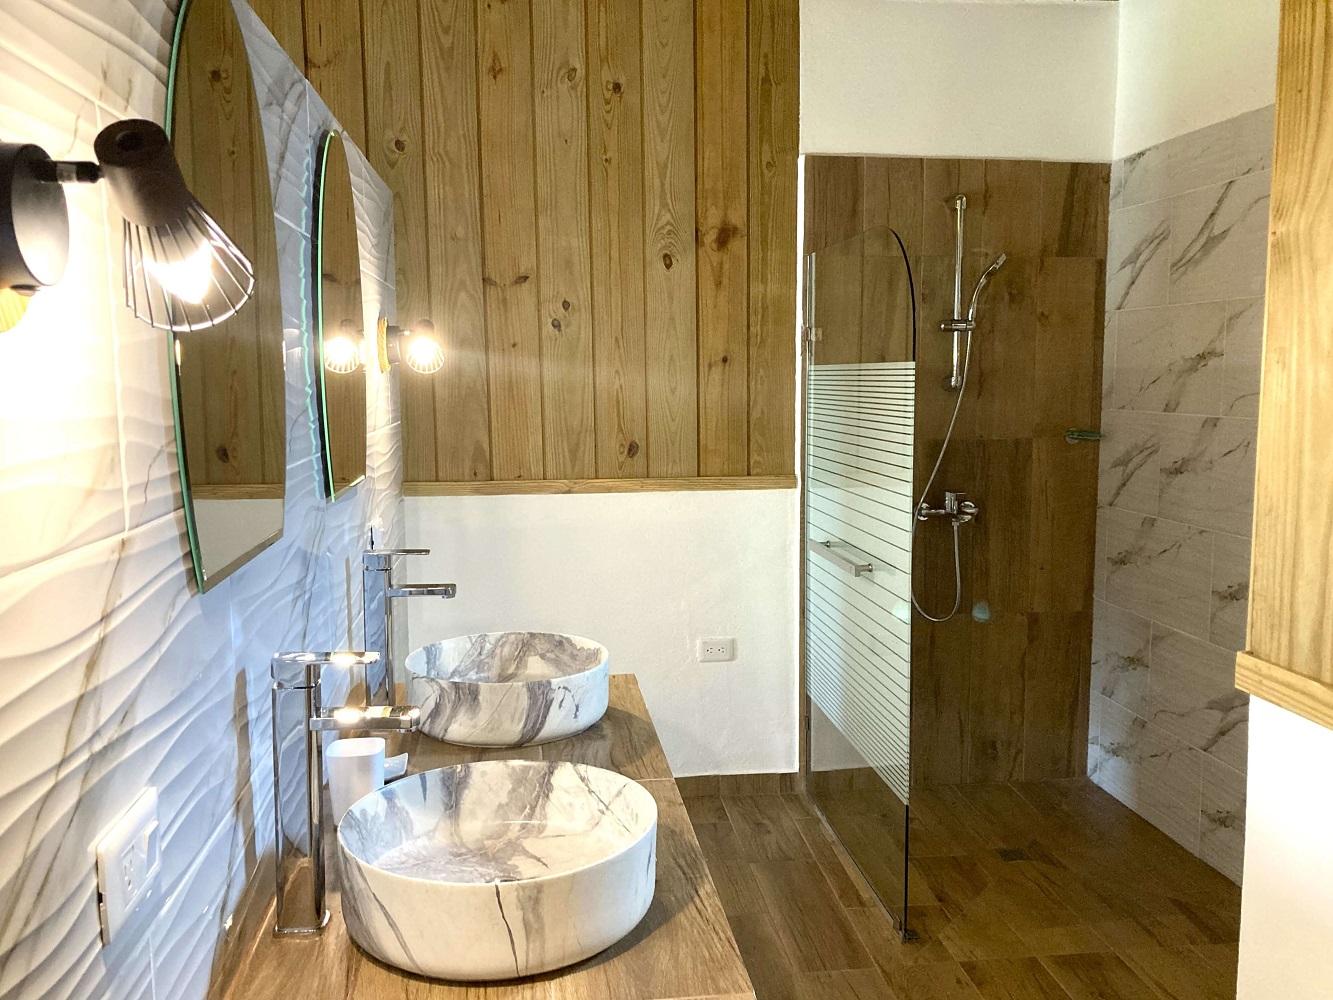 Salle de bain spacieuse et moderne avec douche italienne chambre principale